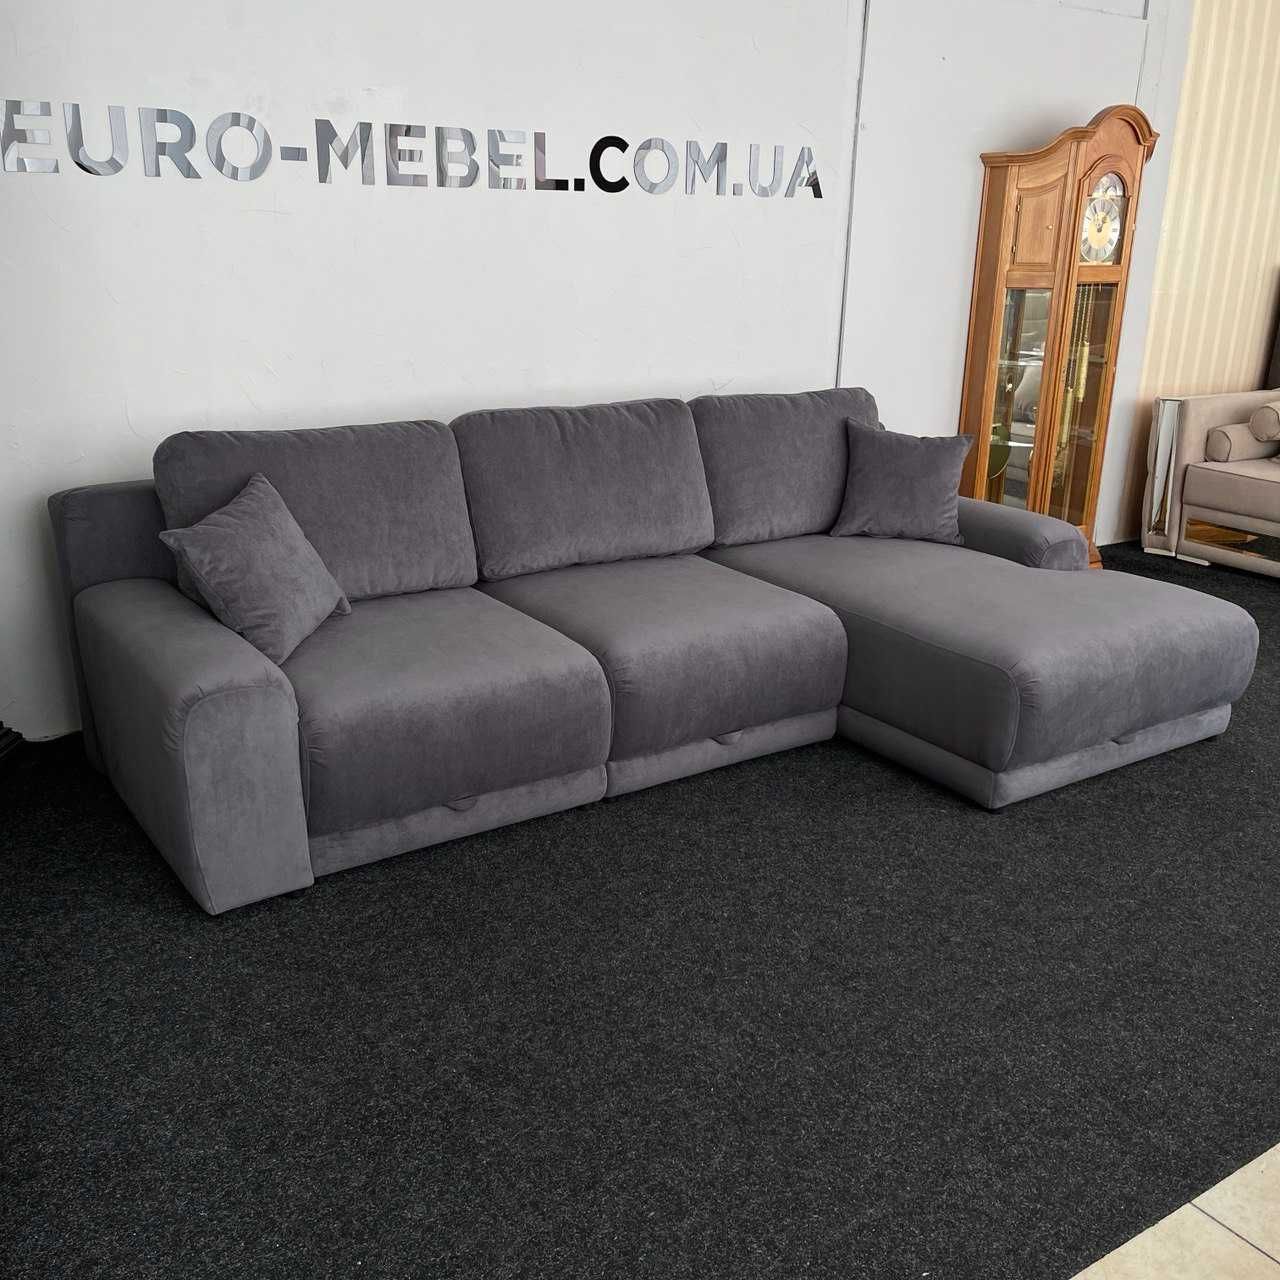 Розкладний диван г-подібної форми в тканині